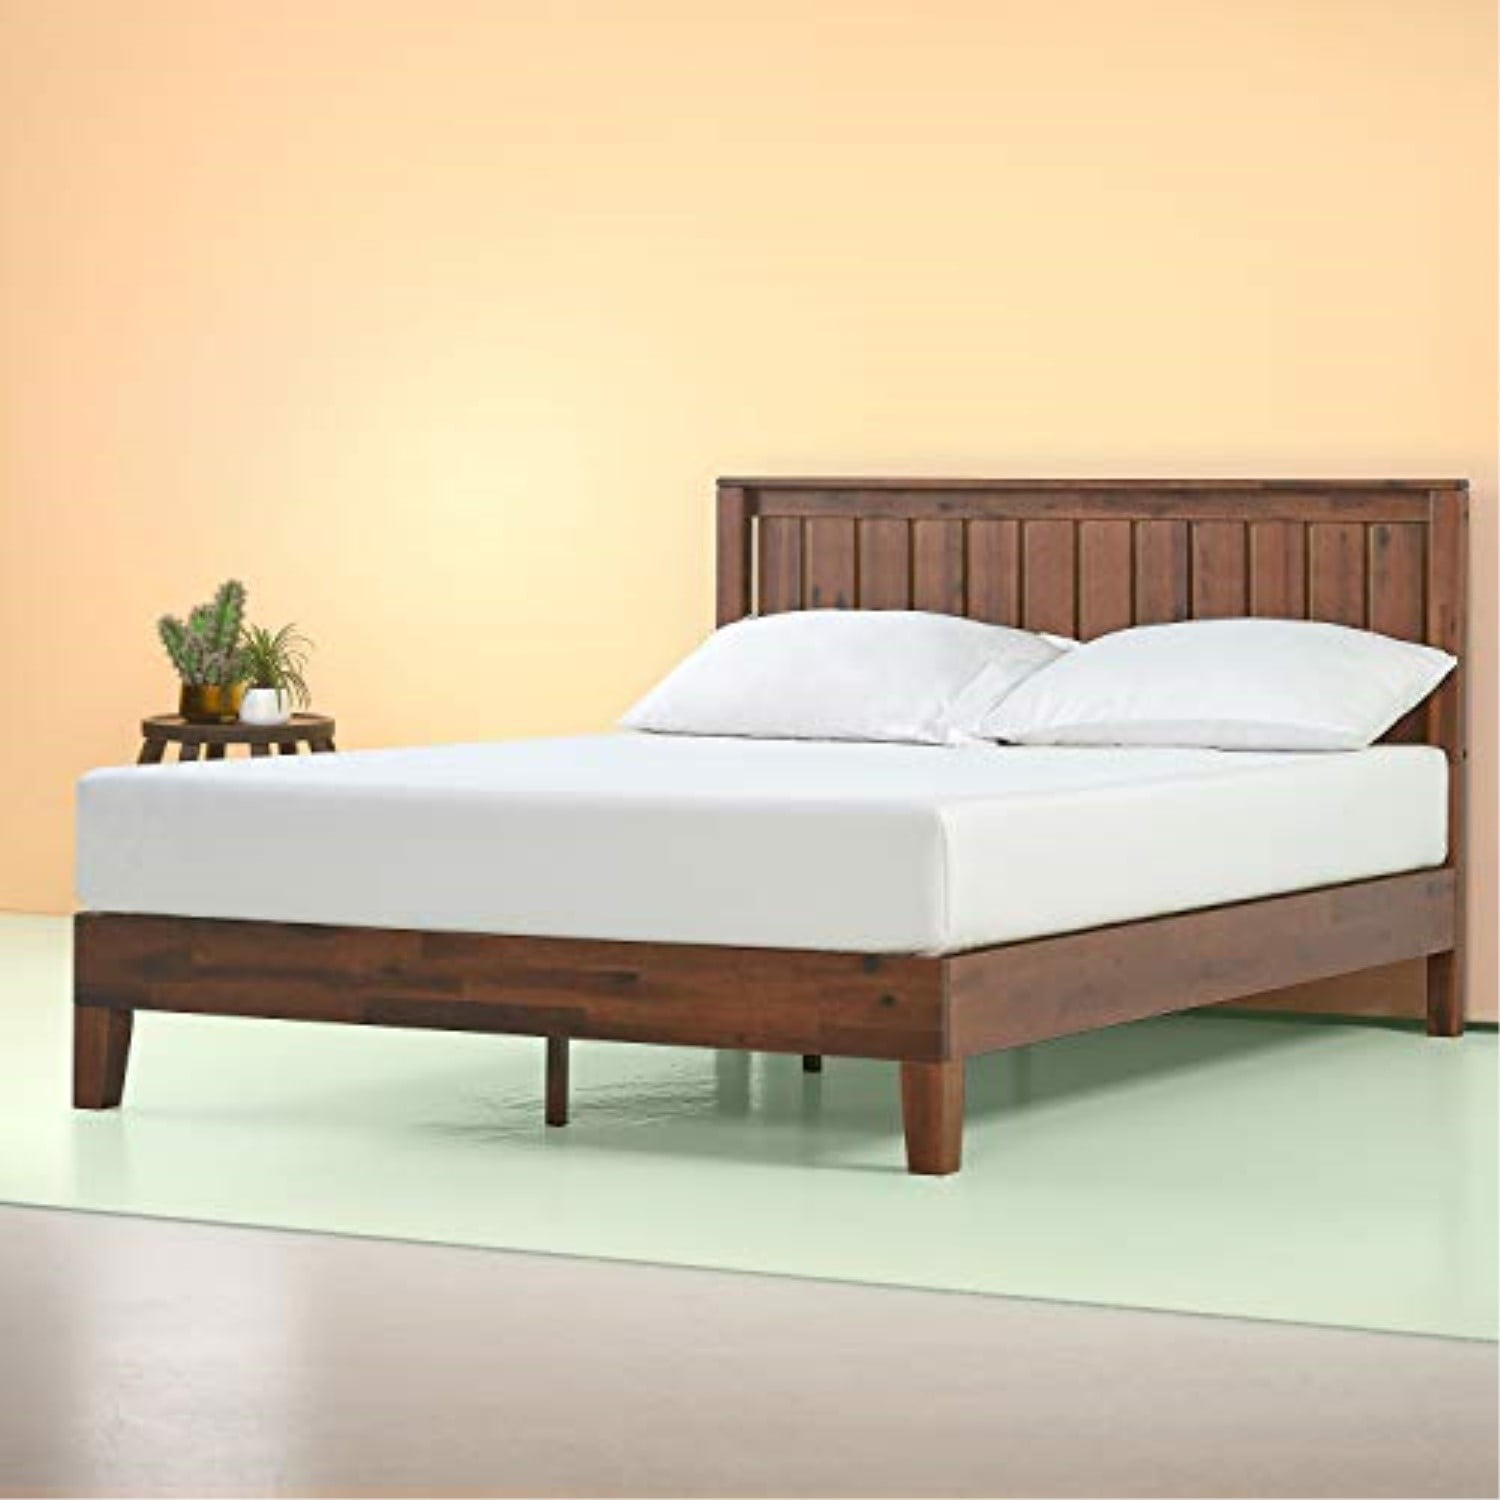 Zinus Vivek 12 Inch Deluxe Wood, Zinus Moiz Deluxe Wood Platform Bed Frame